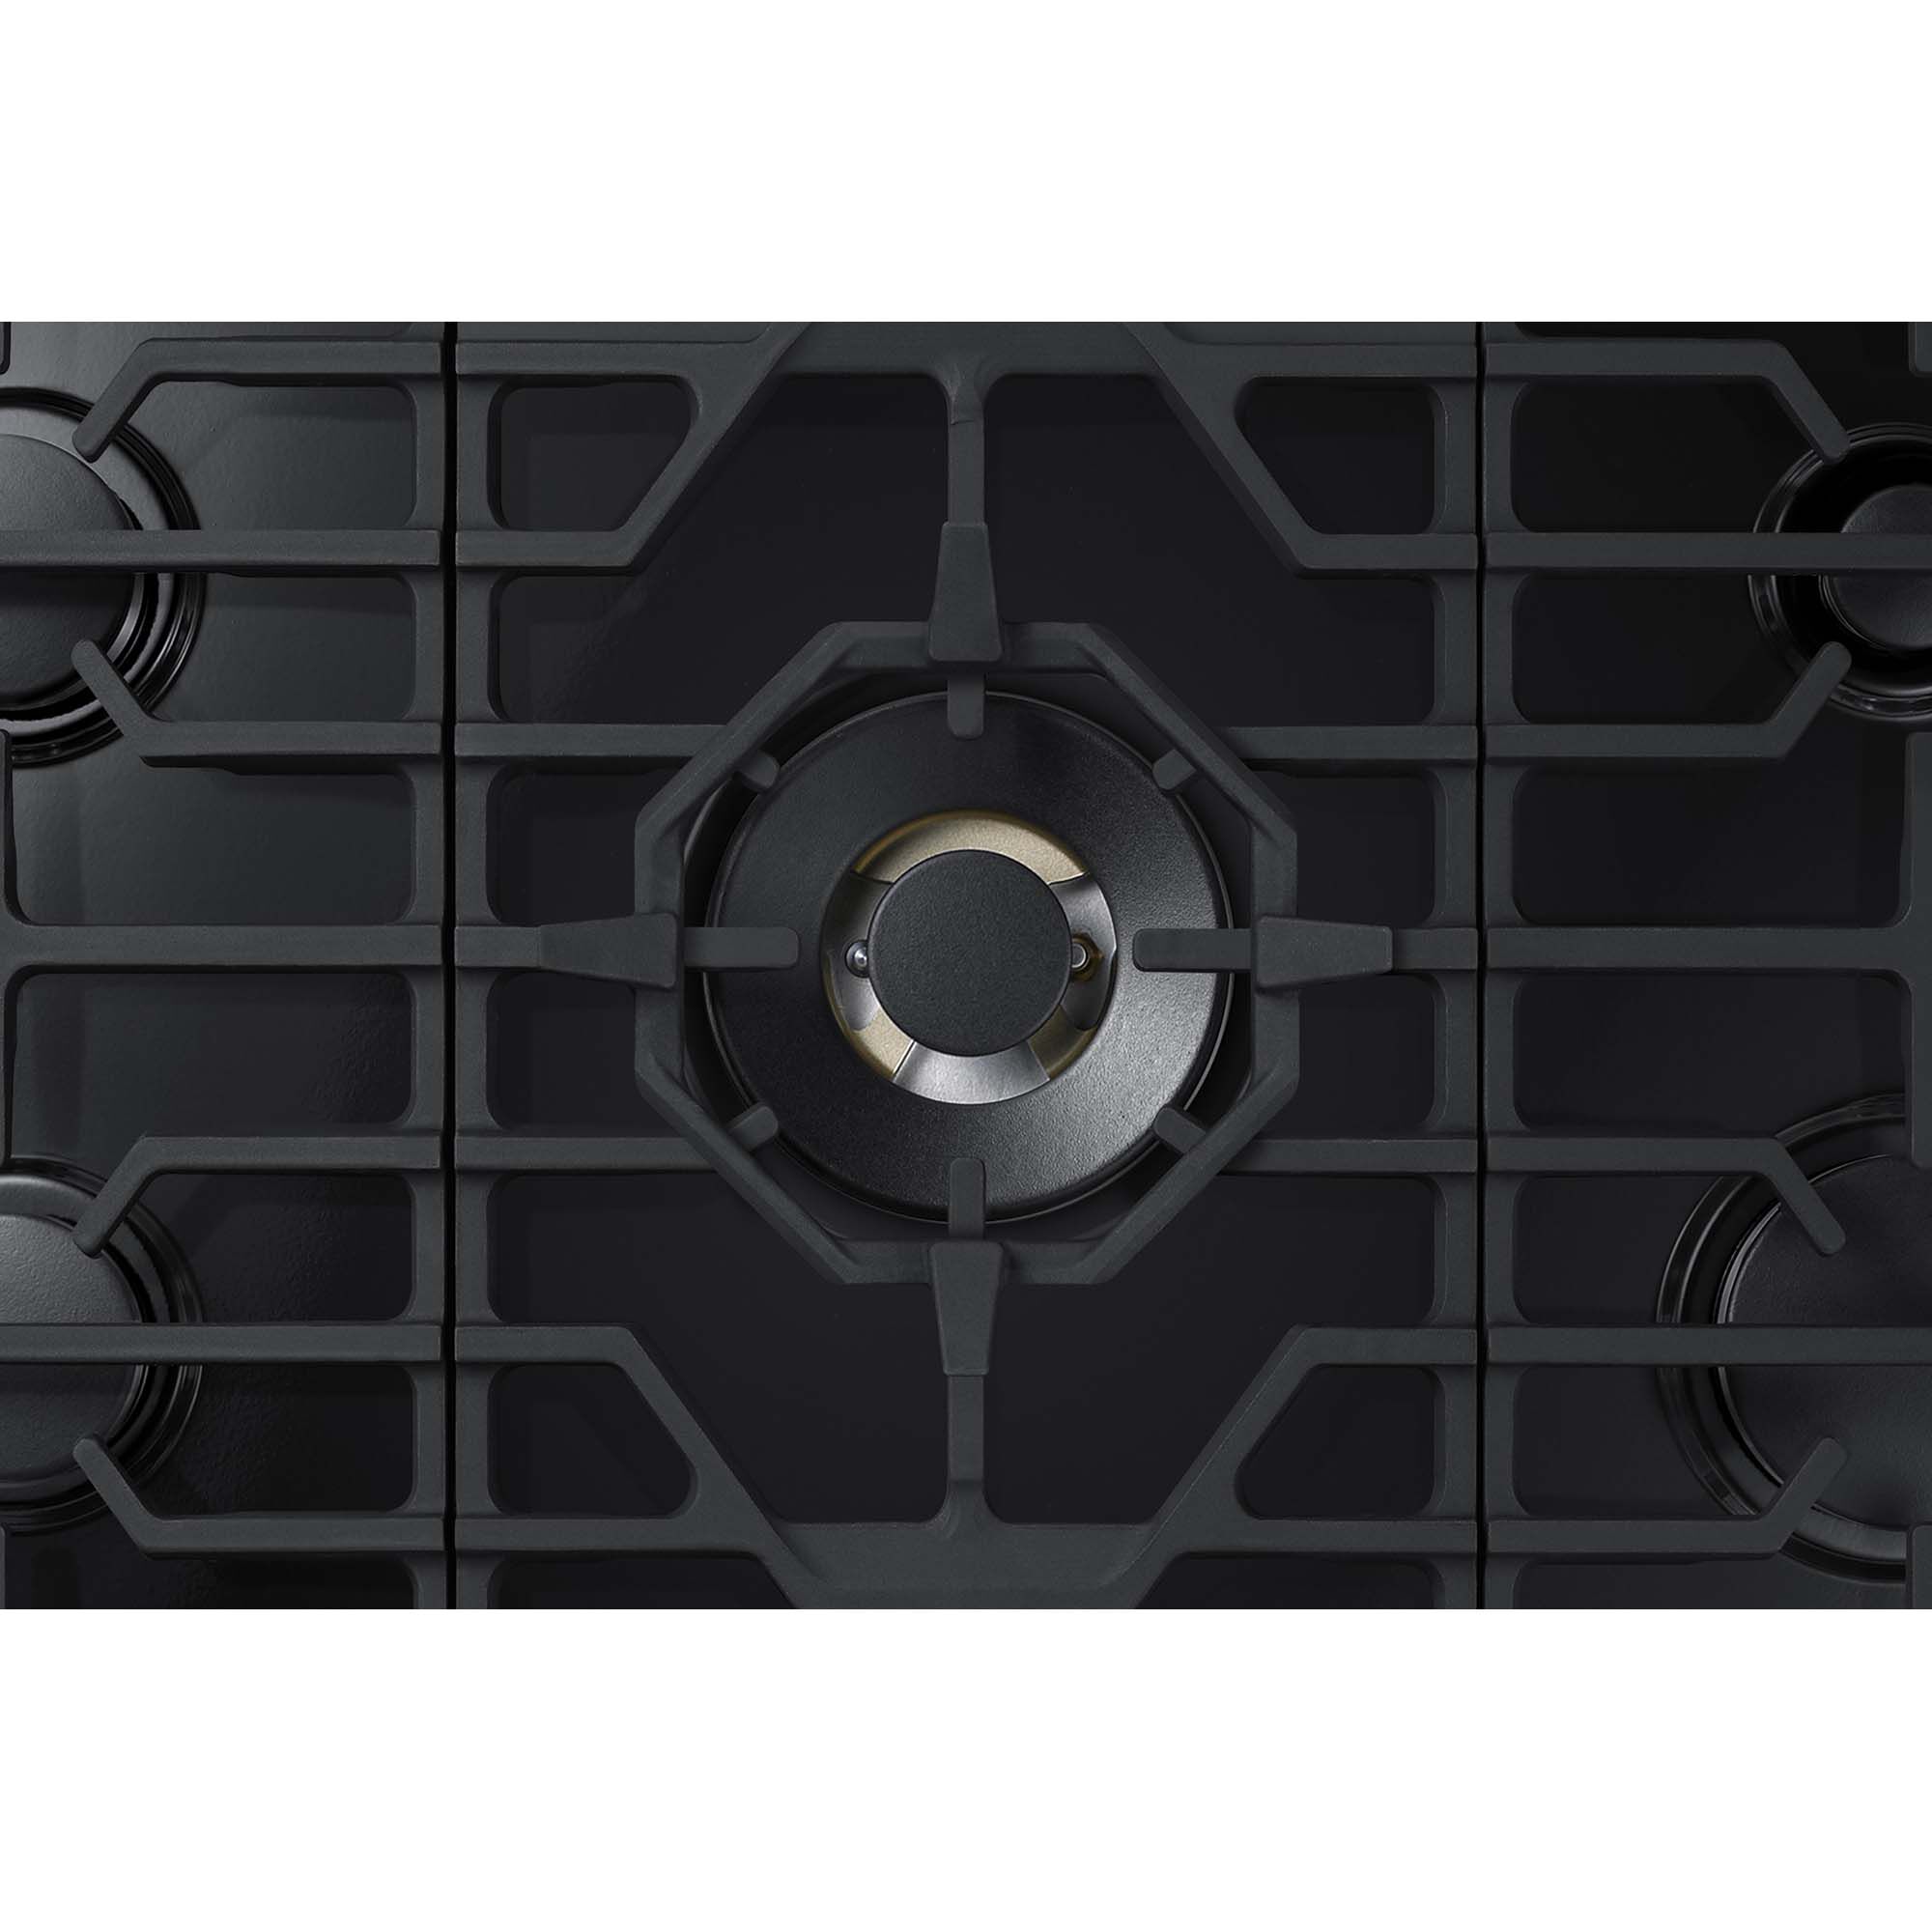 Samsung 36 in. 5-Burner Smart Natural Gas Cooktop with Bluetooth, Griddle,  Simmer Burner & Power Burner - Black Stainless Steel